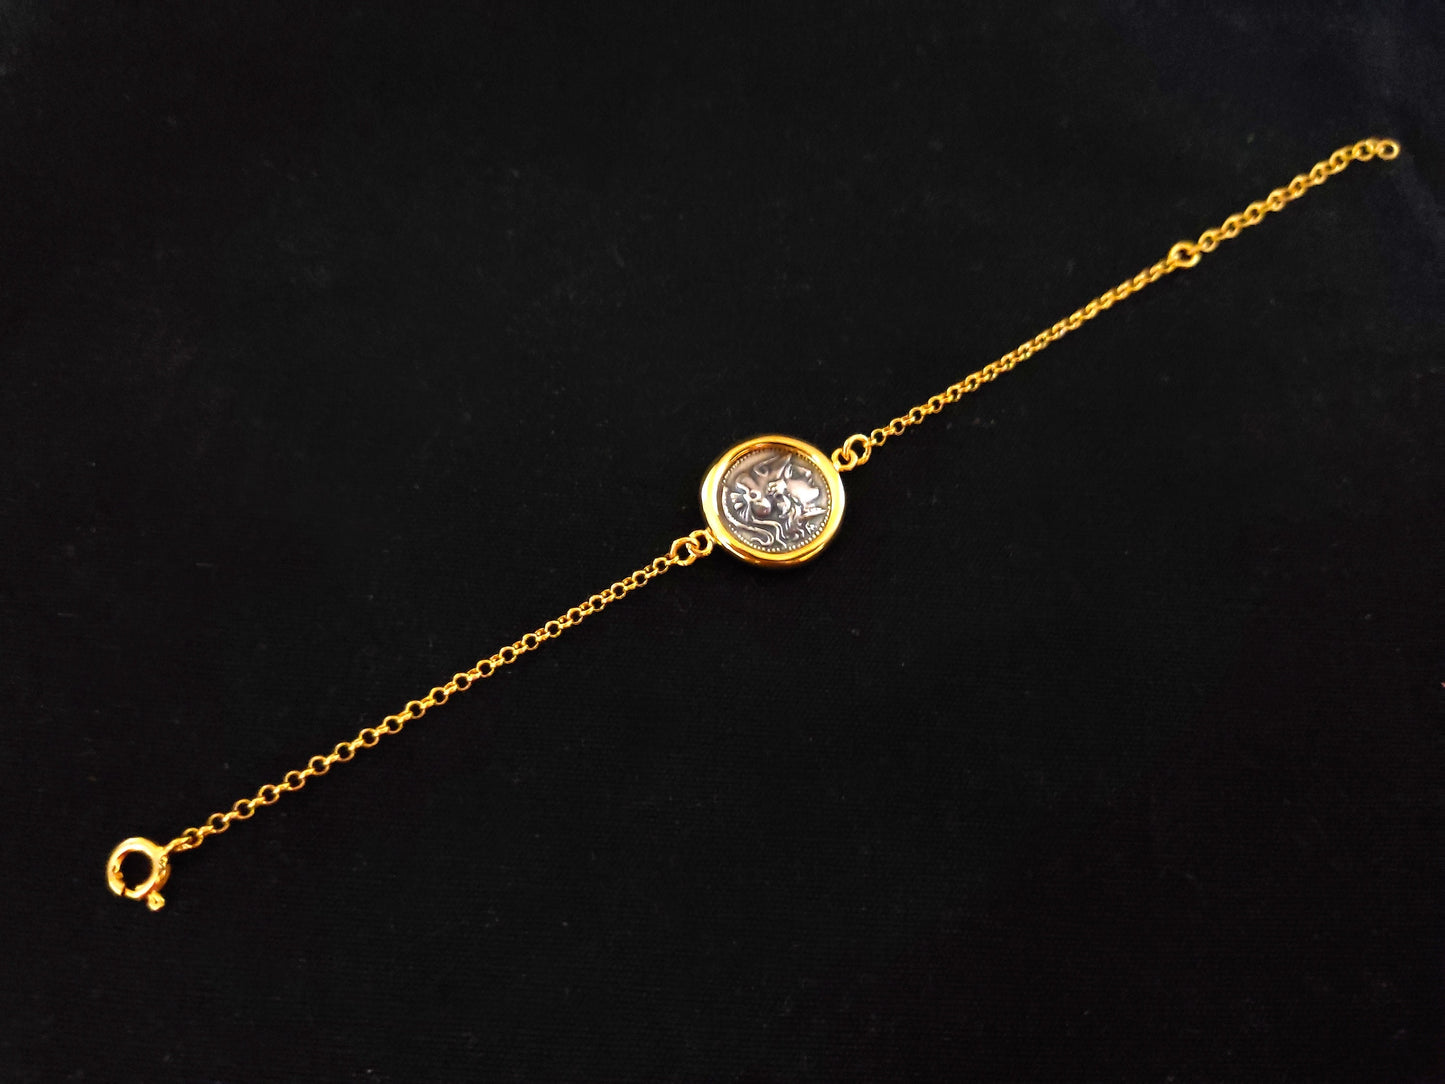 Göttin Athene vergoldetes Silberketten-Münzen-Armband, 17 mm